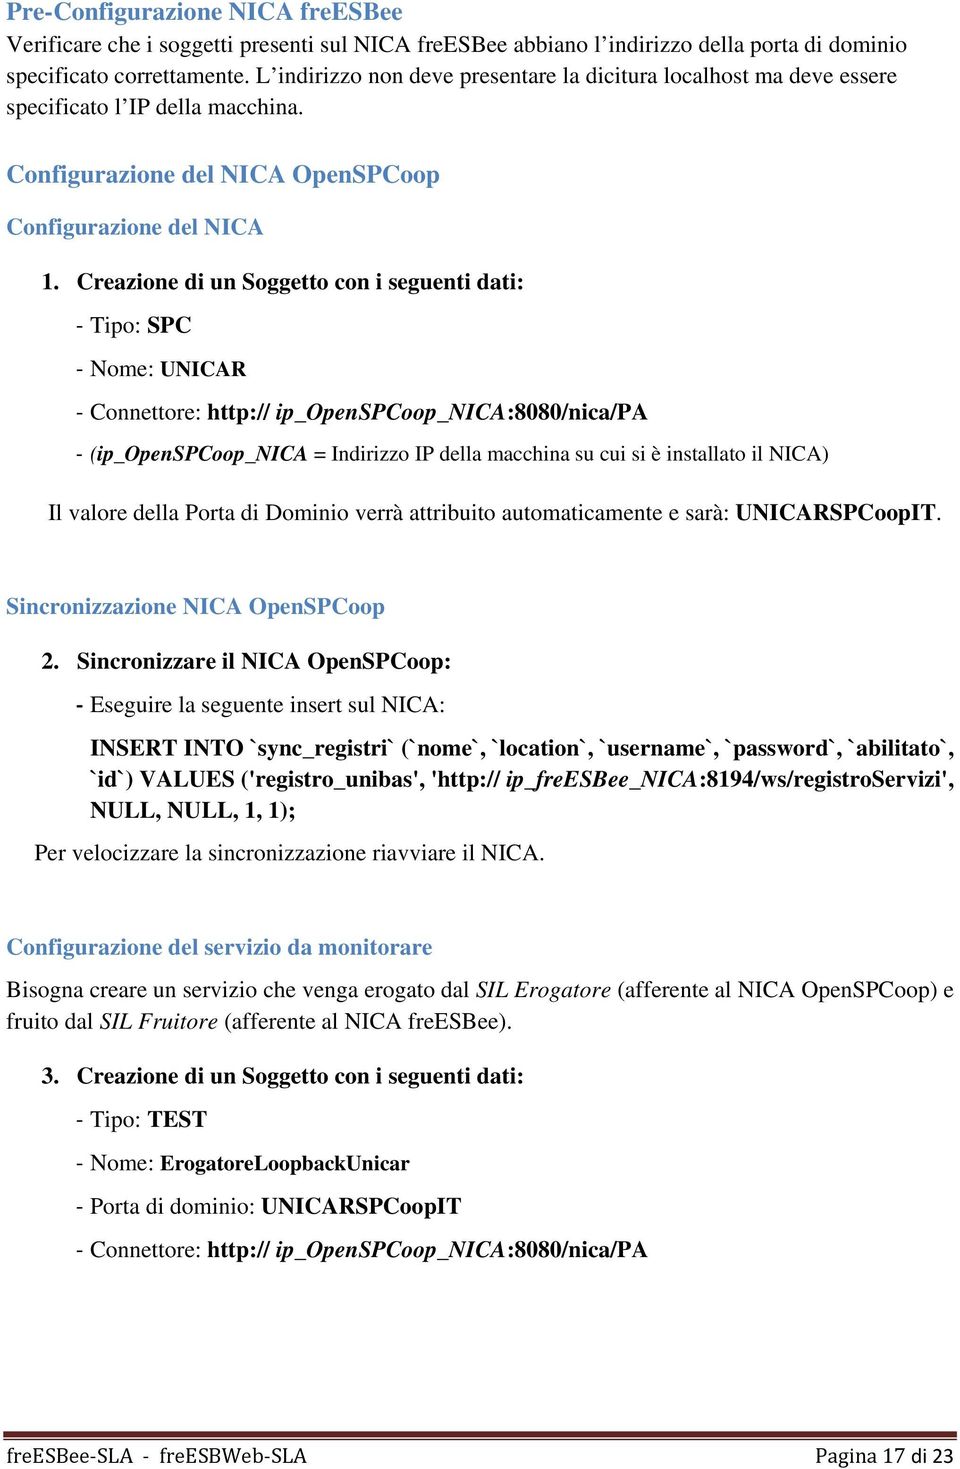 Creazione di un Soggetto con i seguenti dati: Tipo: SPC Nome: UNICAR Connettore: http:// ip_openspcoop_nica:8080/nica/pa (ip_openspcoop_nica = Indirizzo IP della macchina su cui si è installato il